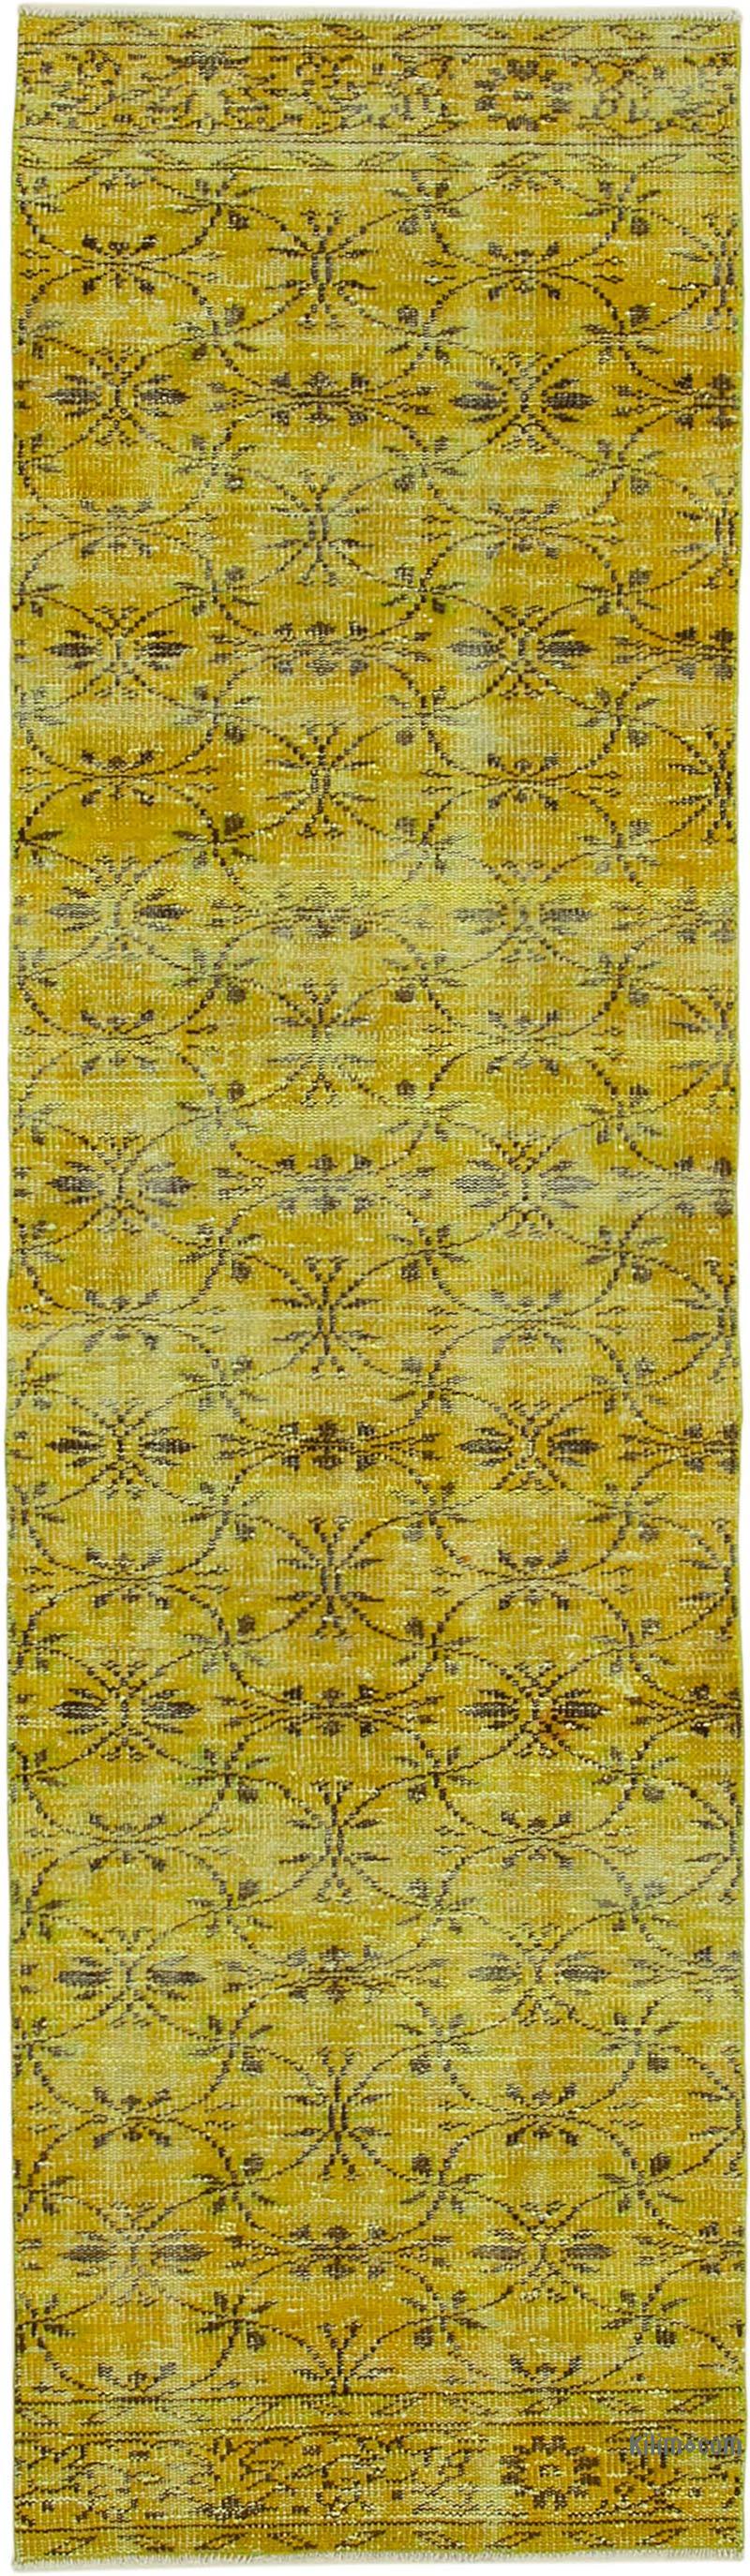 Amarillo Alfombra de Pasillo Turca Vintage Sobreteñida - 81 cm x 284 cm - K0052139